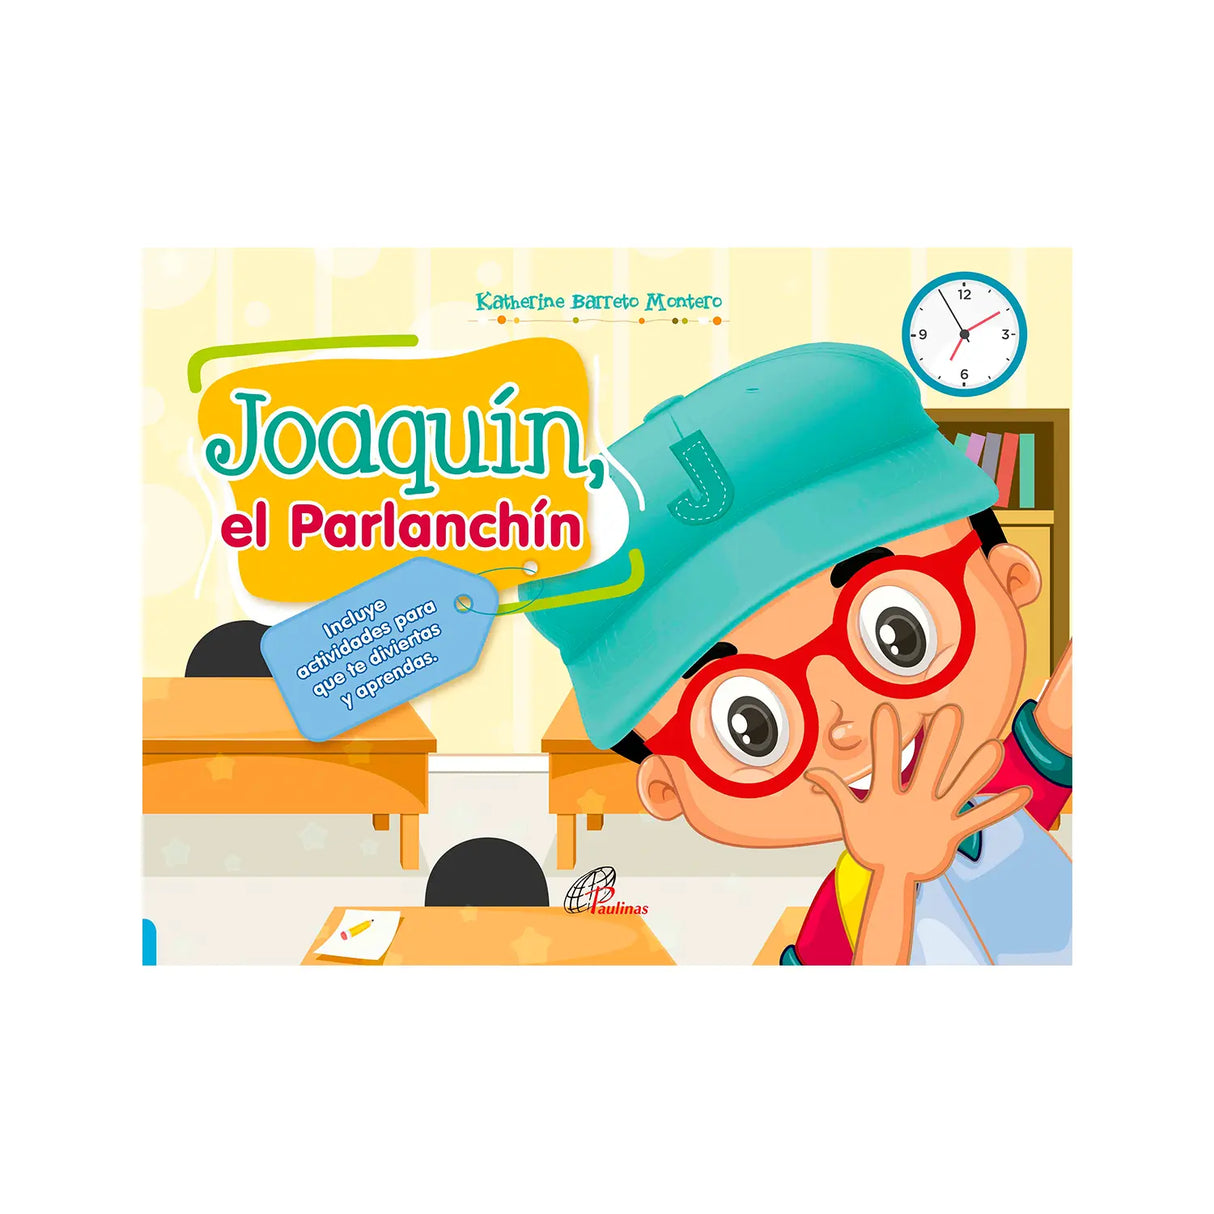 Joaquín, el parlanchín